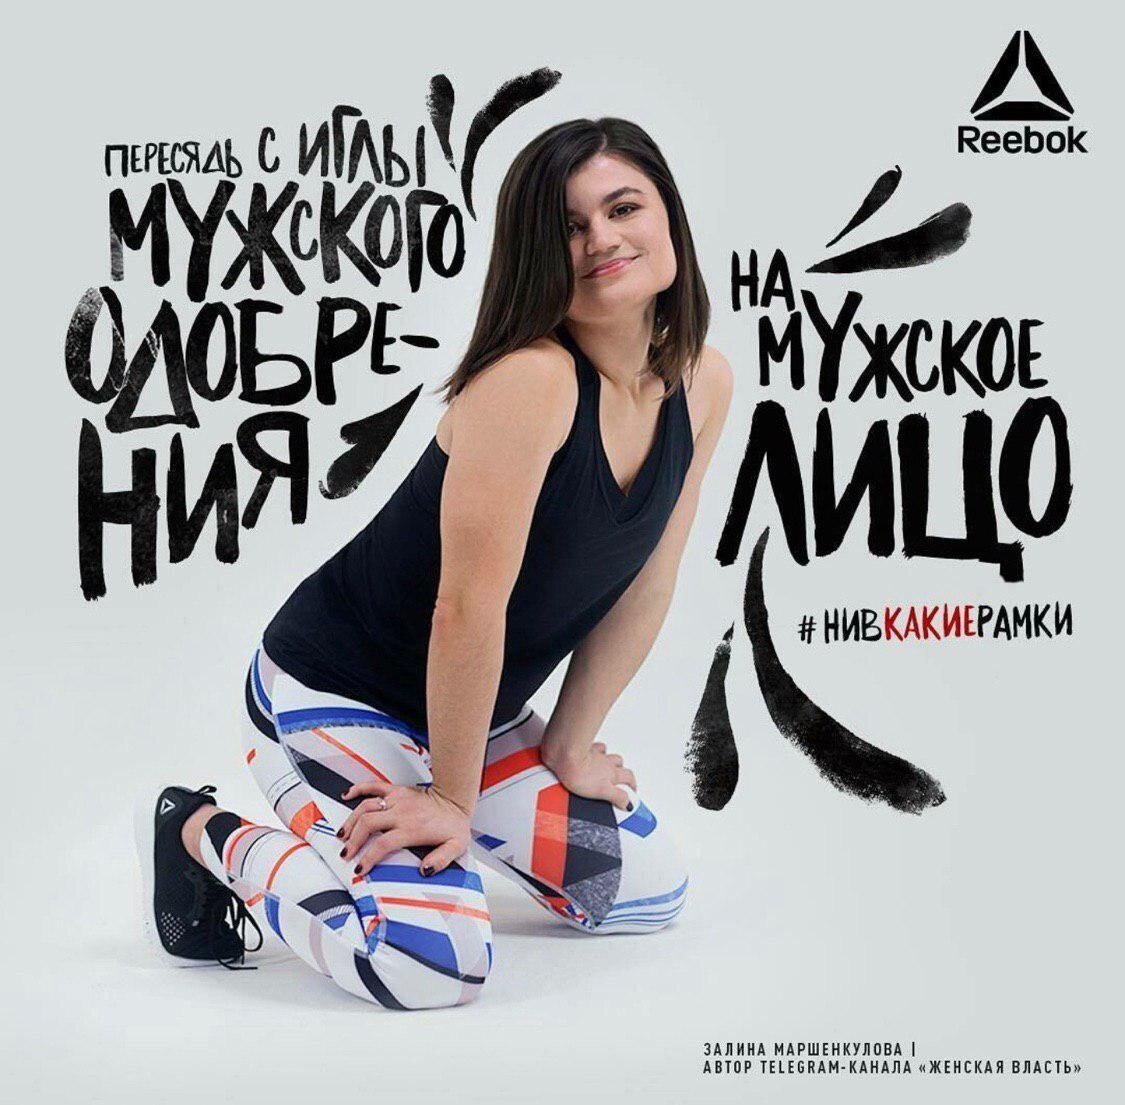 Нашумевшая рекламная кампания спортивной одежды «Reebok»